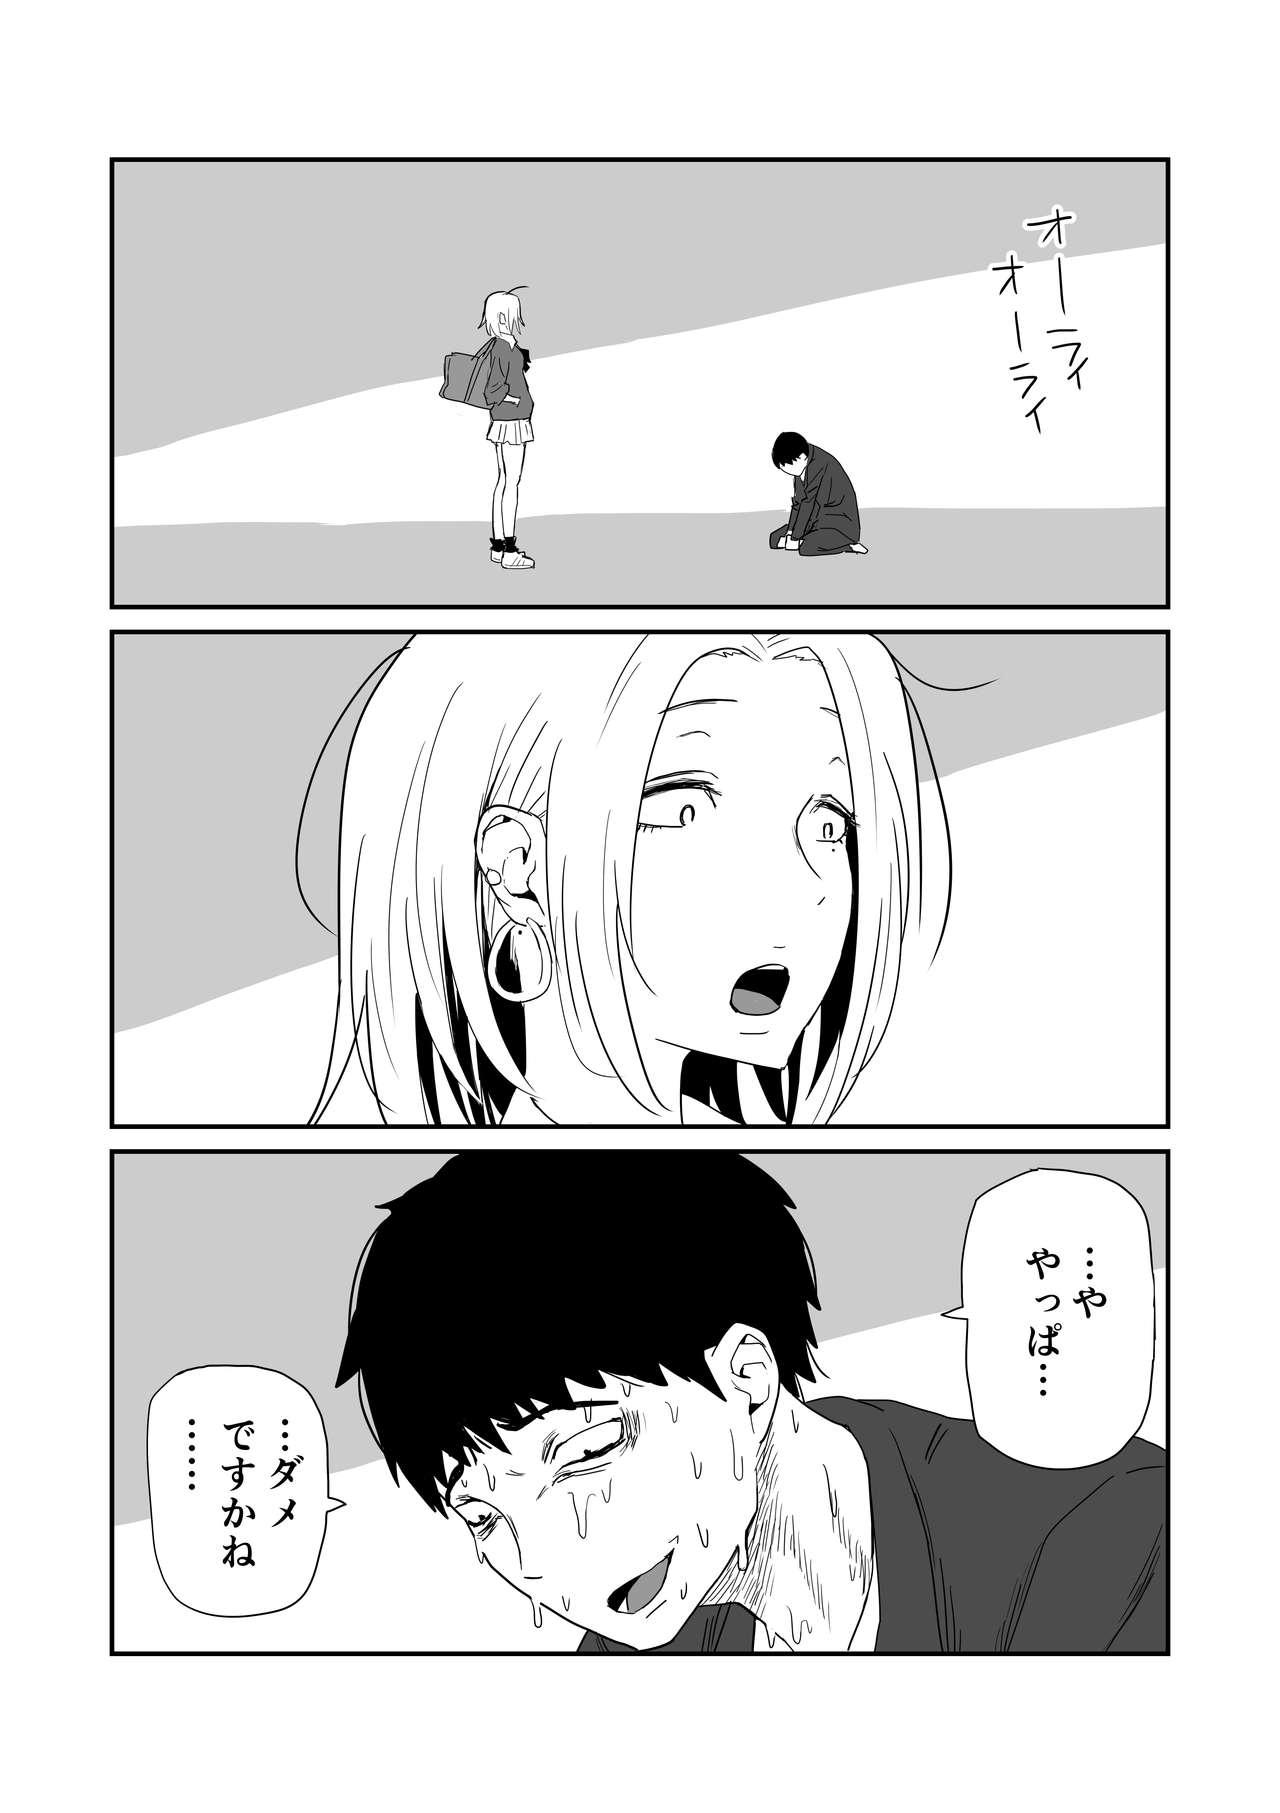 女子高生のエロ漫画 37